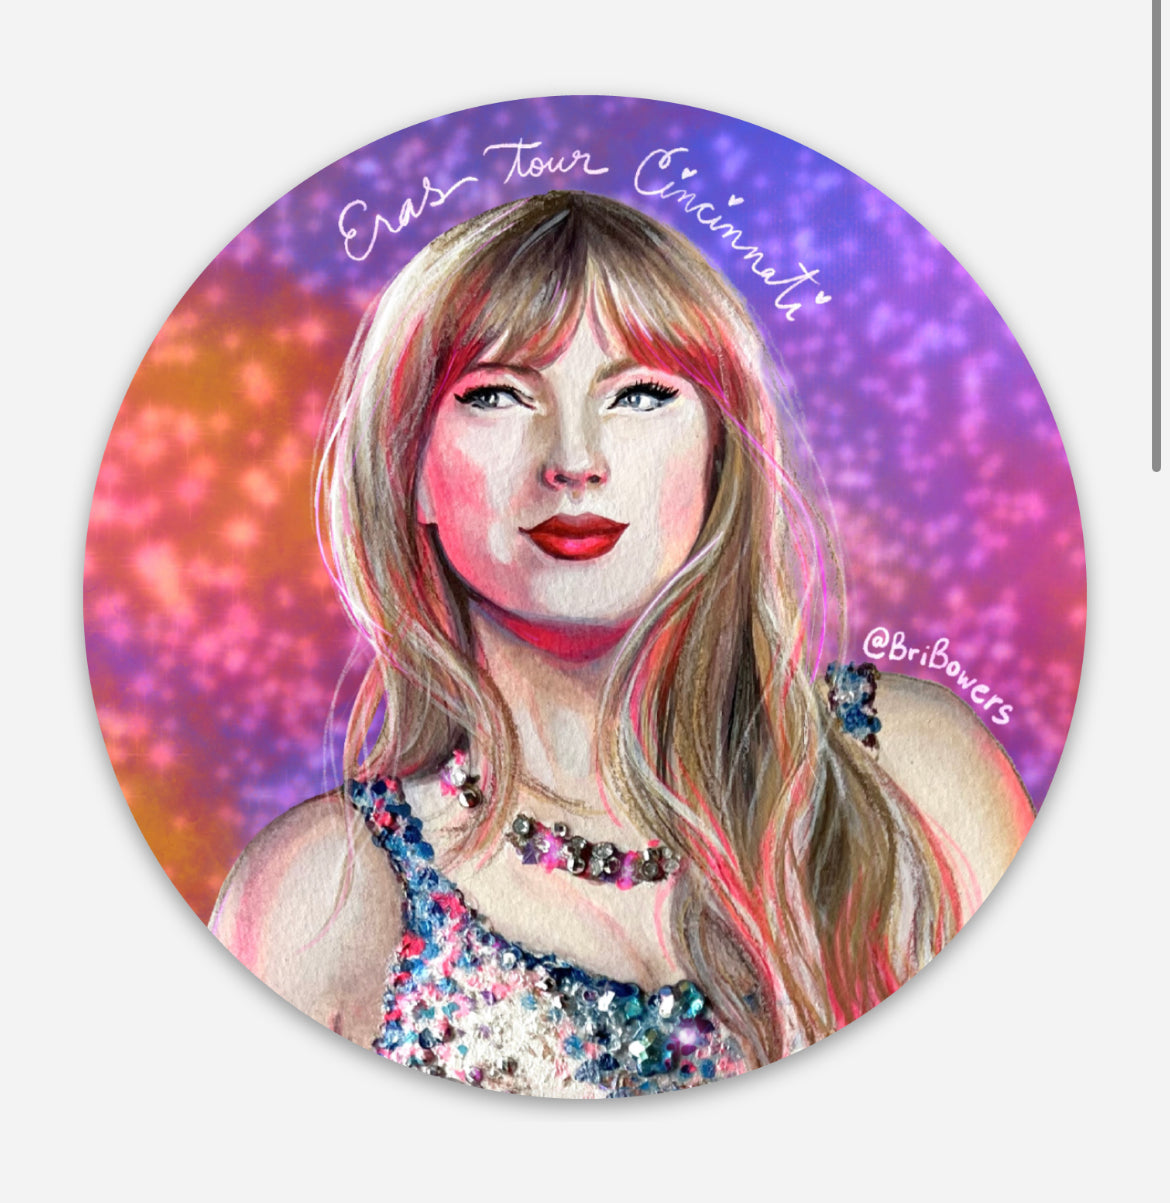 Taylor Swift Eras Tour Sticker